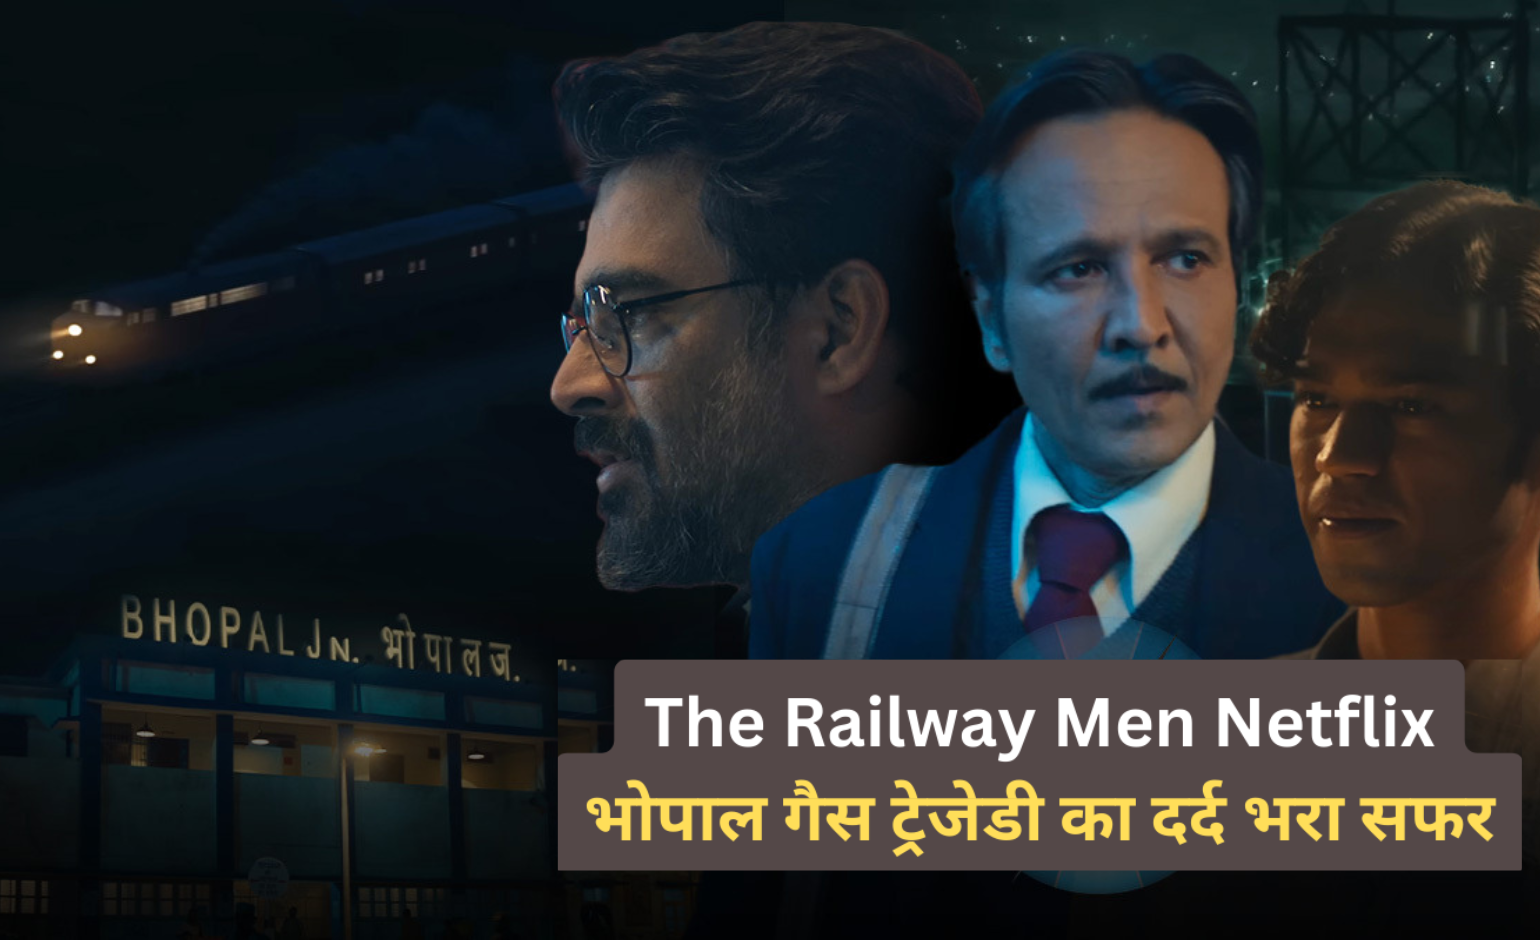 The Railway Men Netflix: भोपाल गैस ट्रेजेडी का दर्द भरा सफर